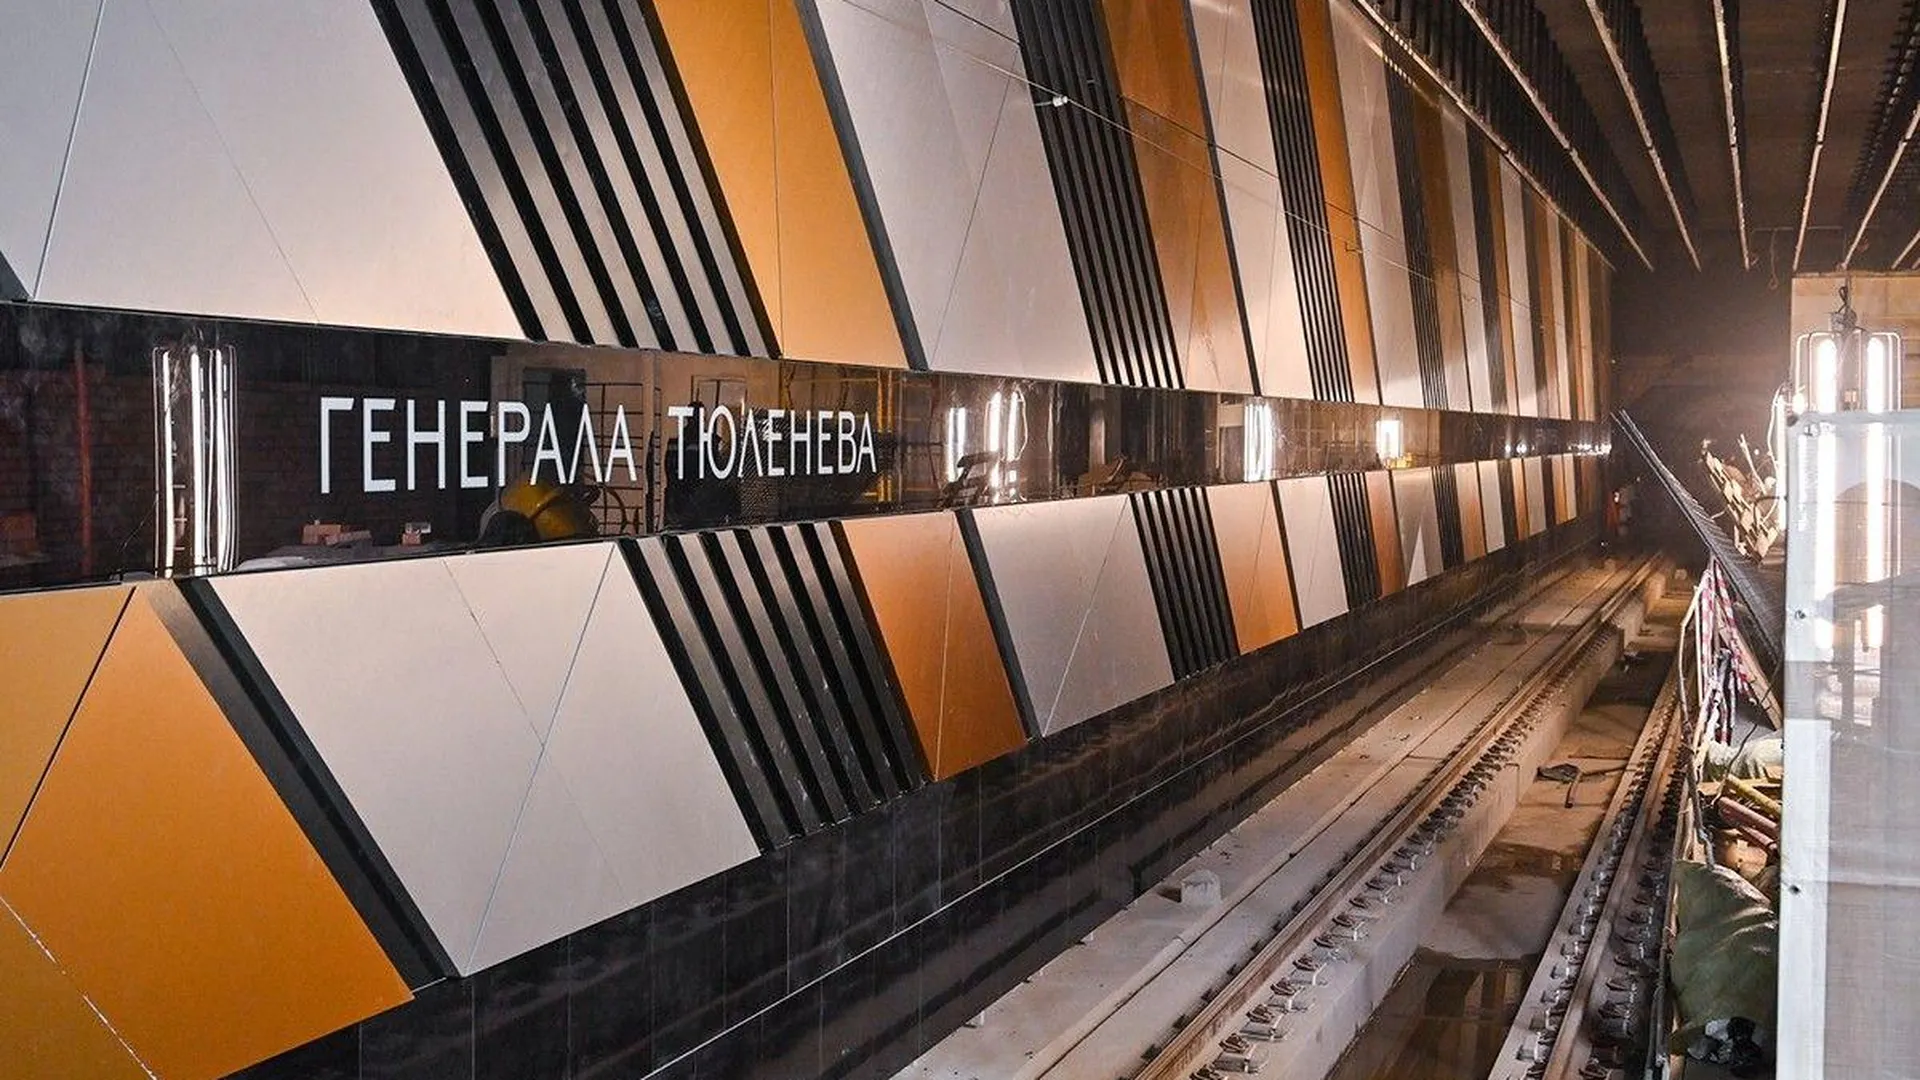 Бочкарев: на станции метро «Генерала Тюленева» завершают отделку путевых стен